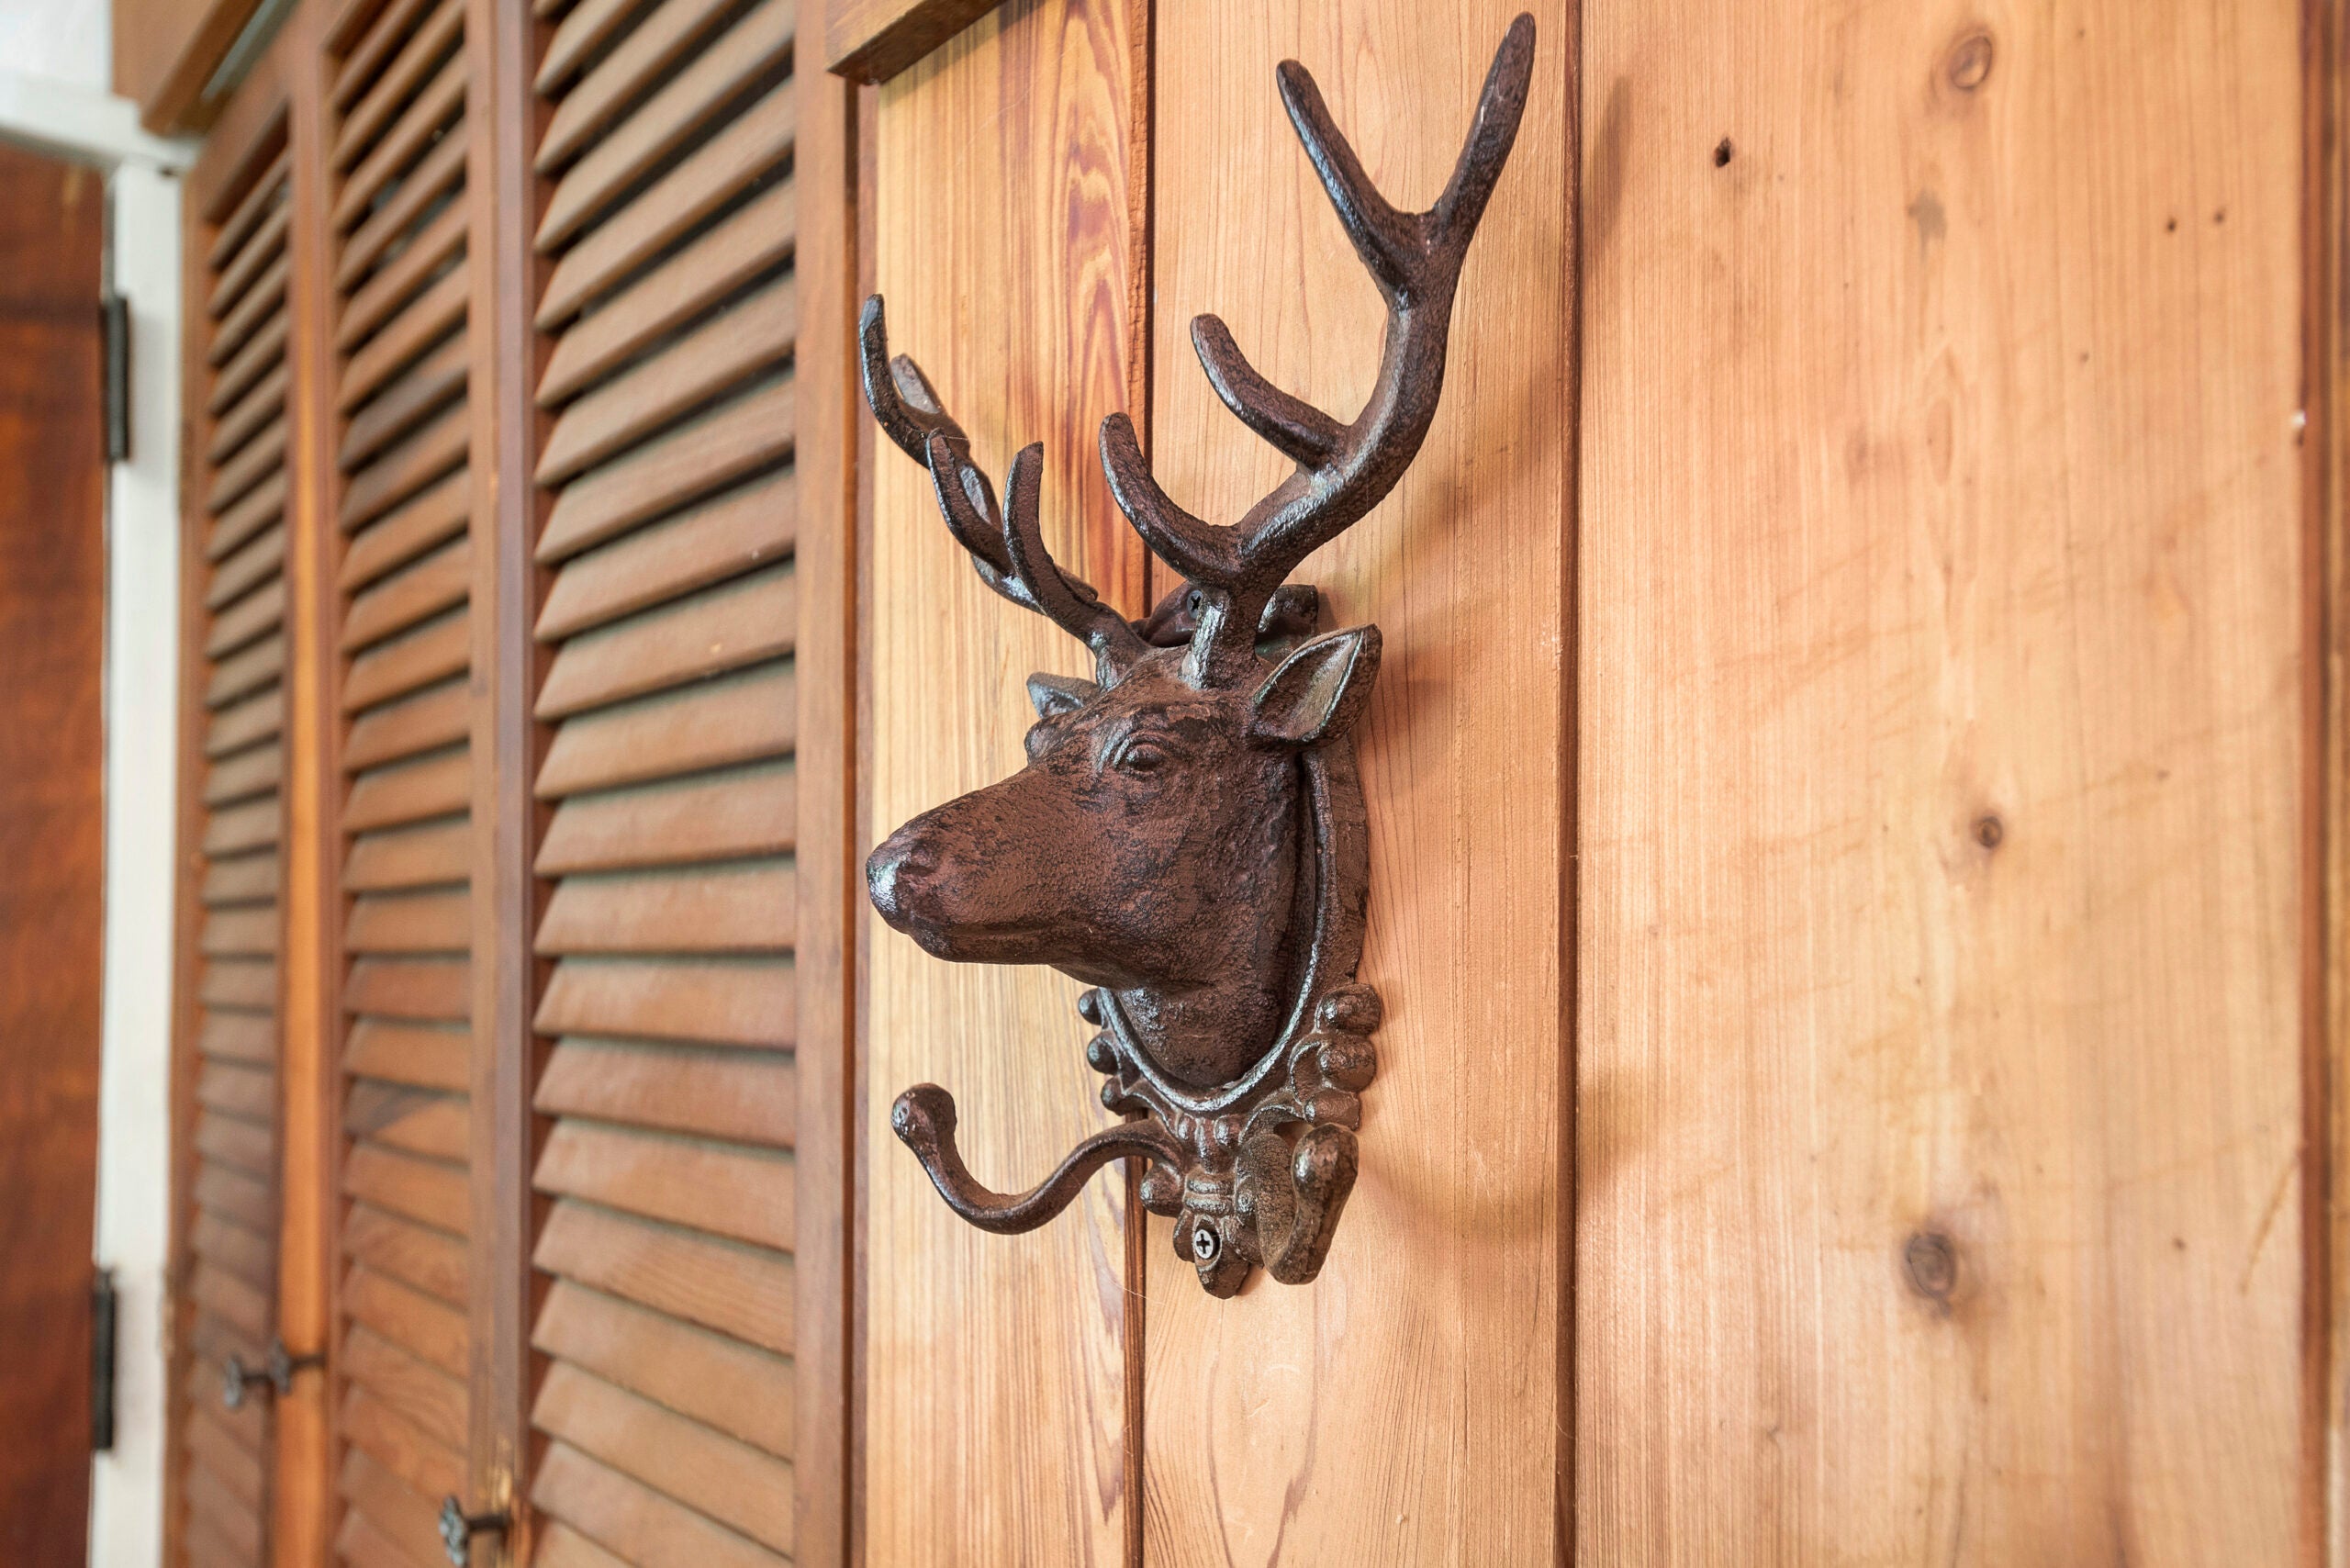 An iron rack shaped like a deer on a wood wall.